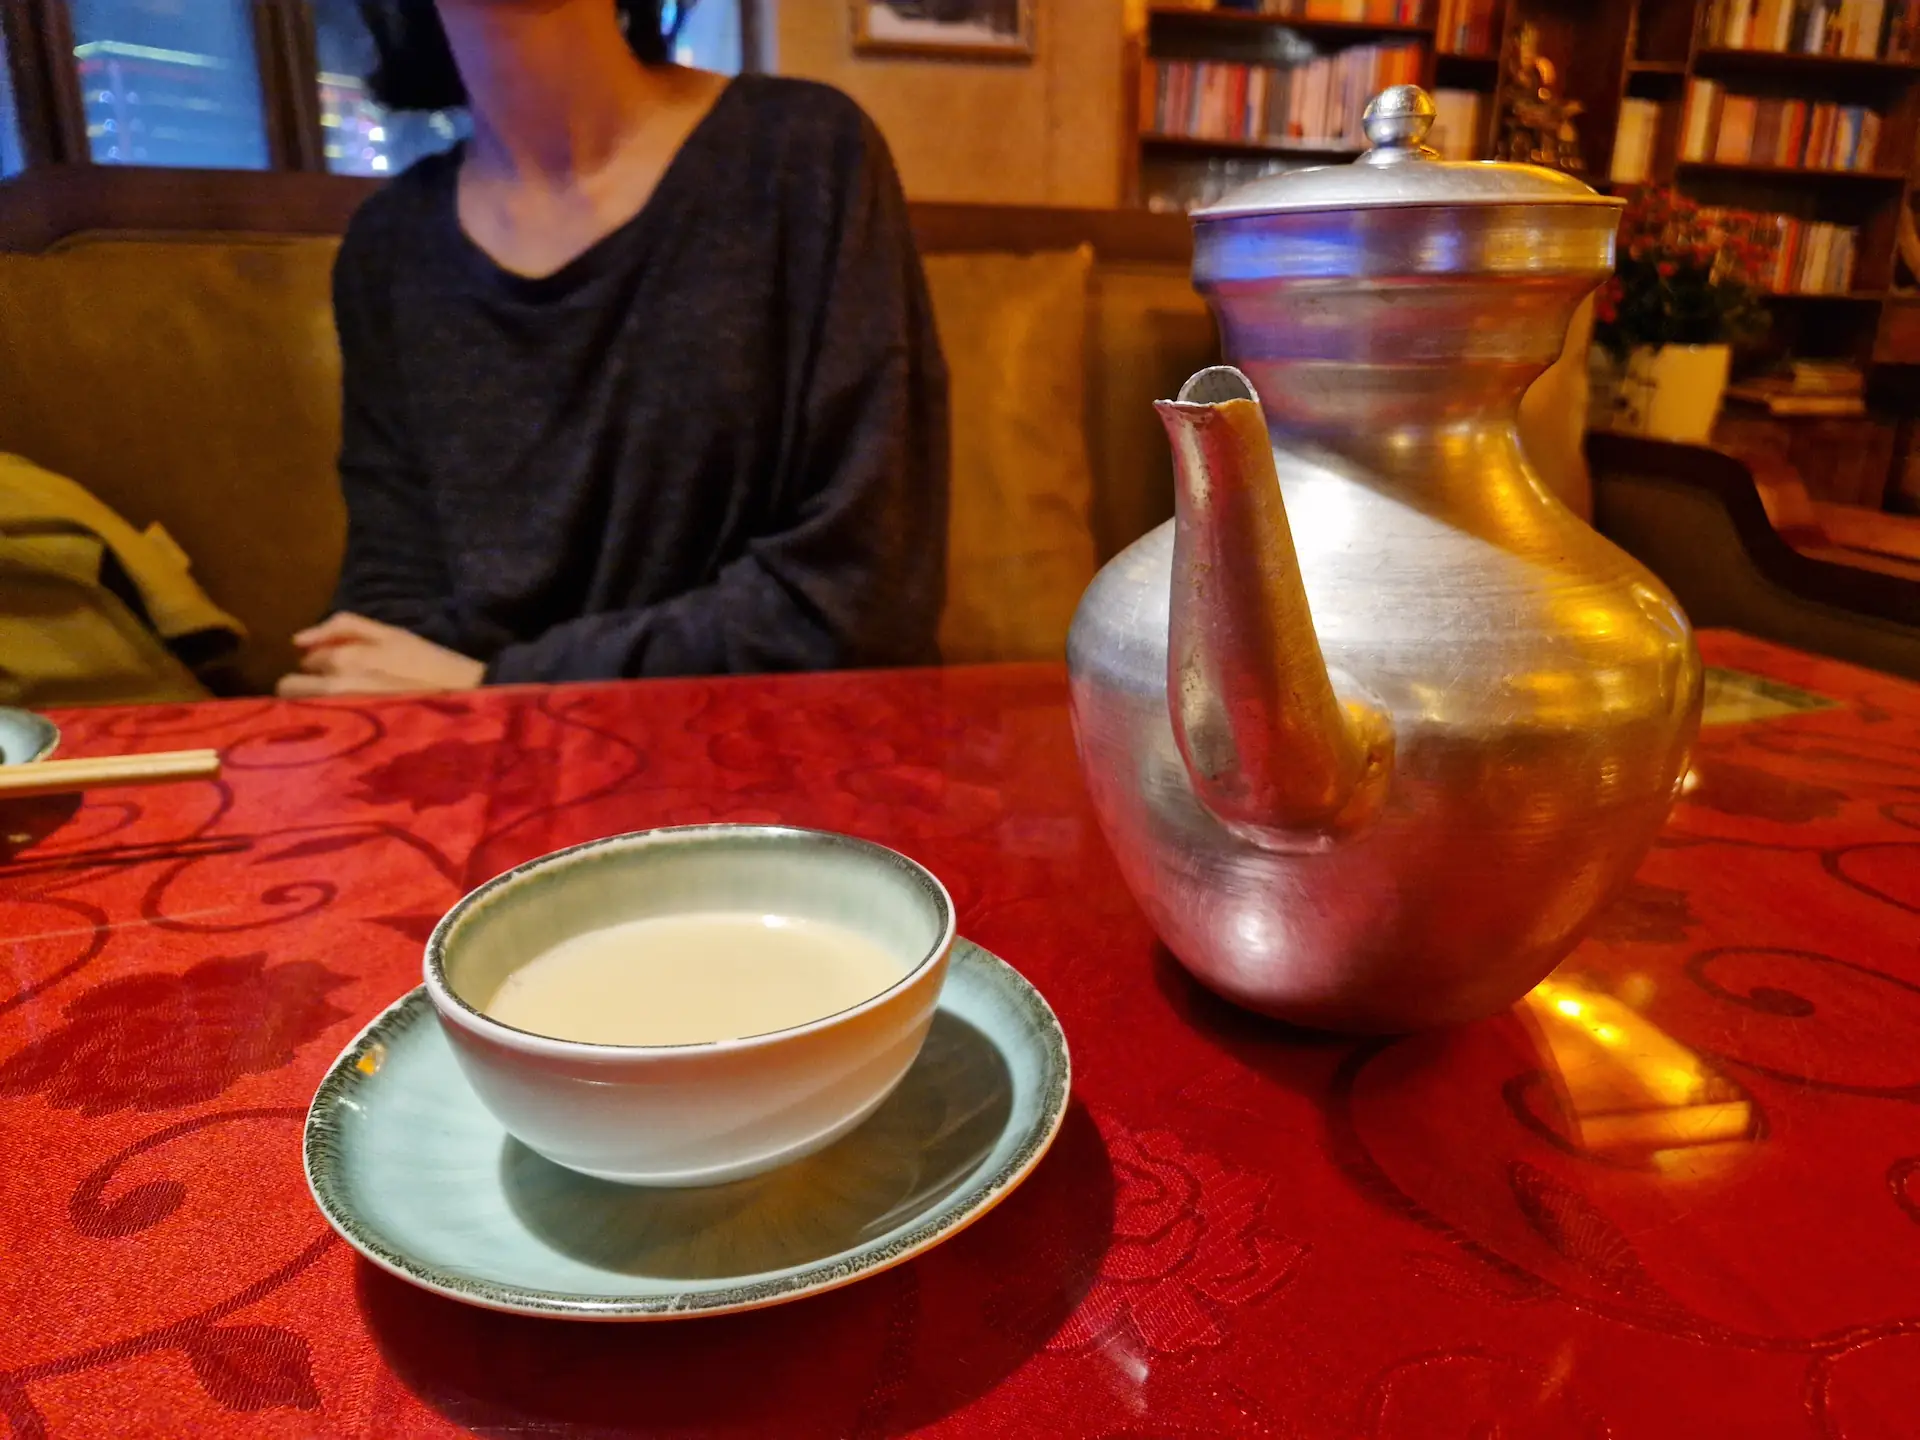 Une grande carafe métallique et une tasse en céramique remplie d'une boisson blanc opaque, le thé au beurre tibétain